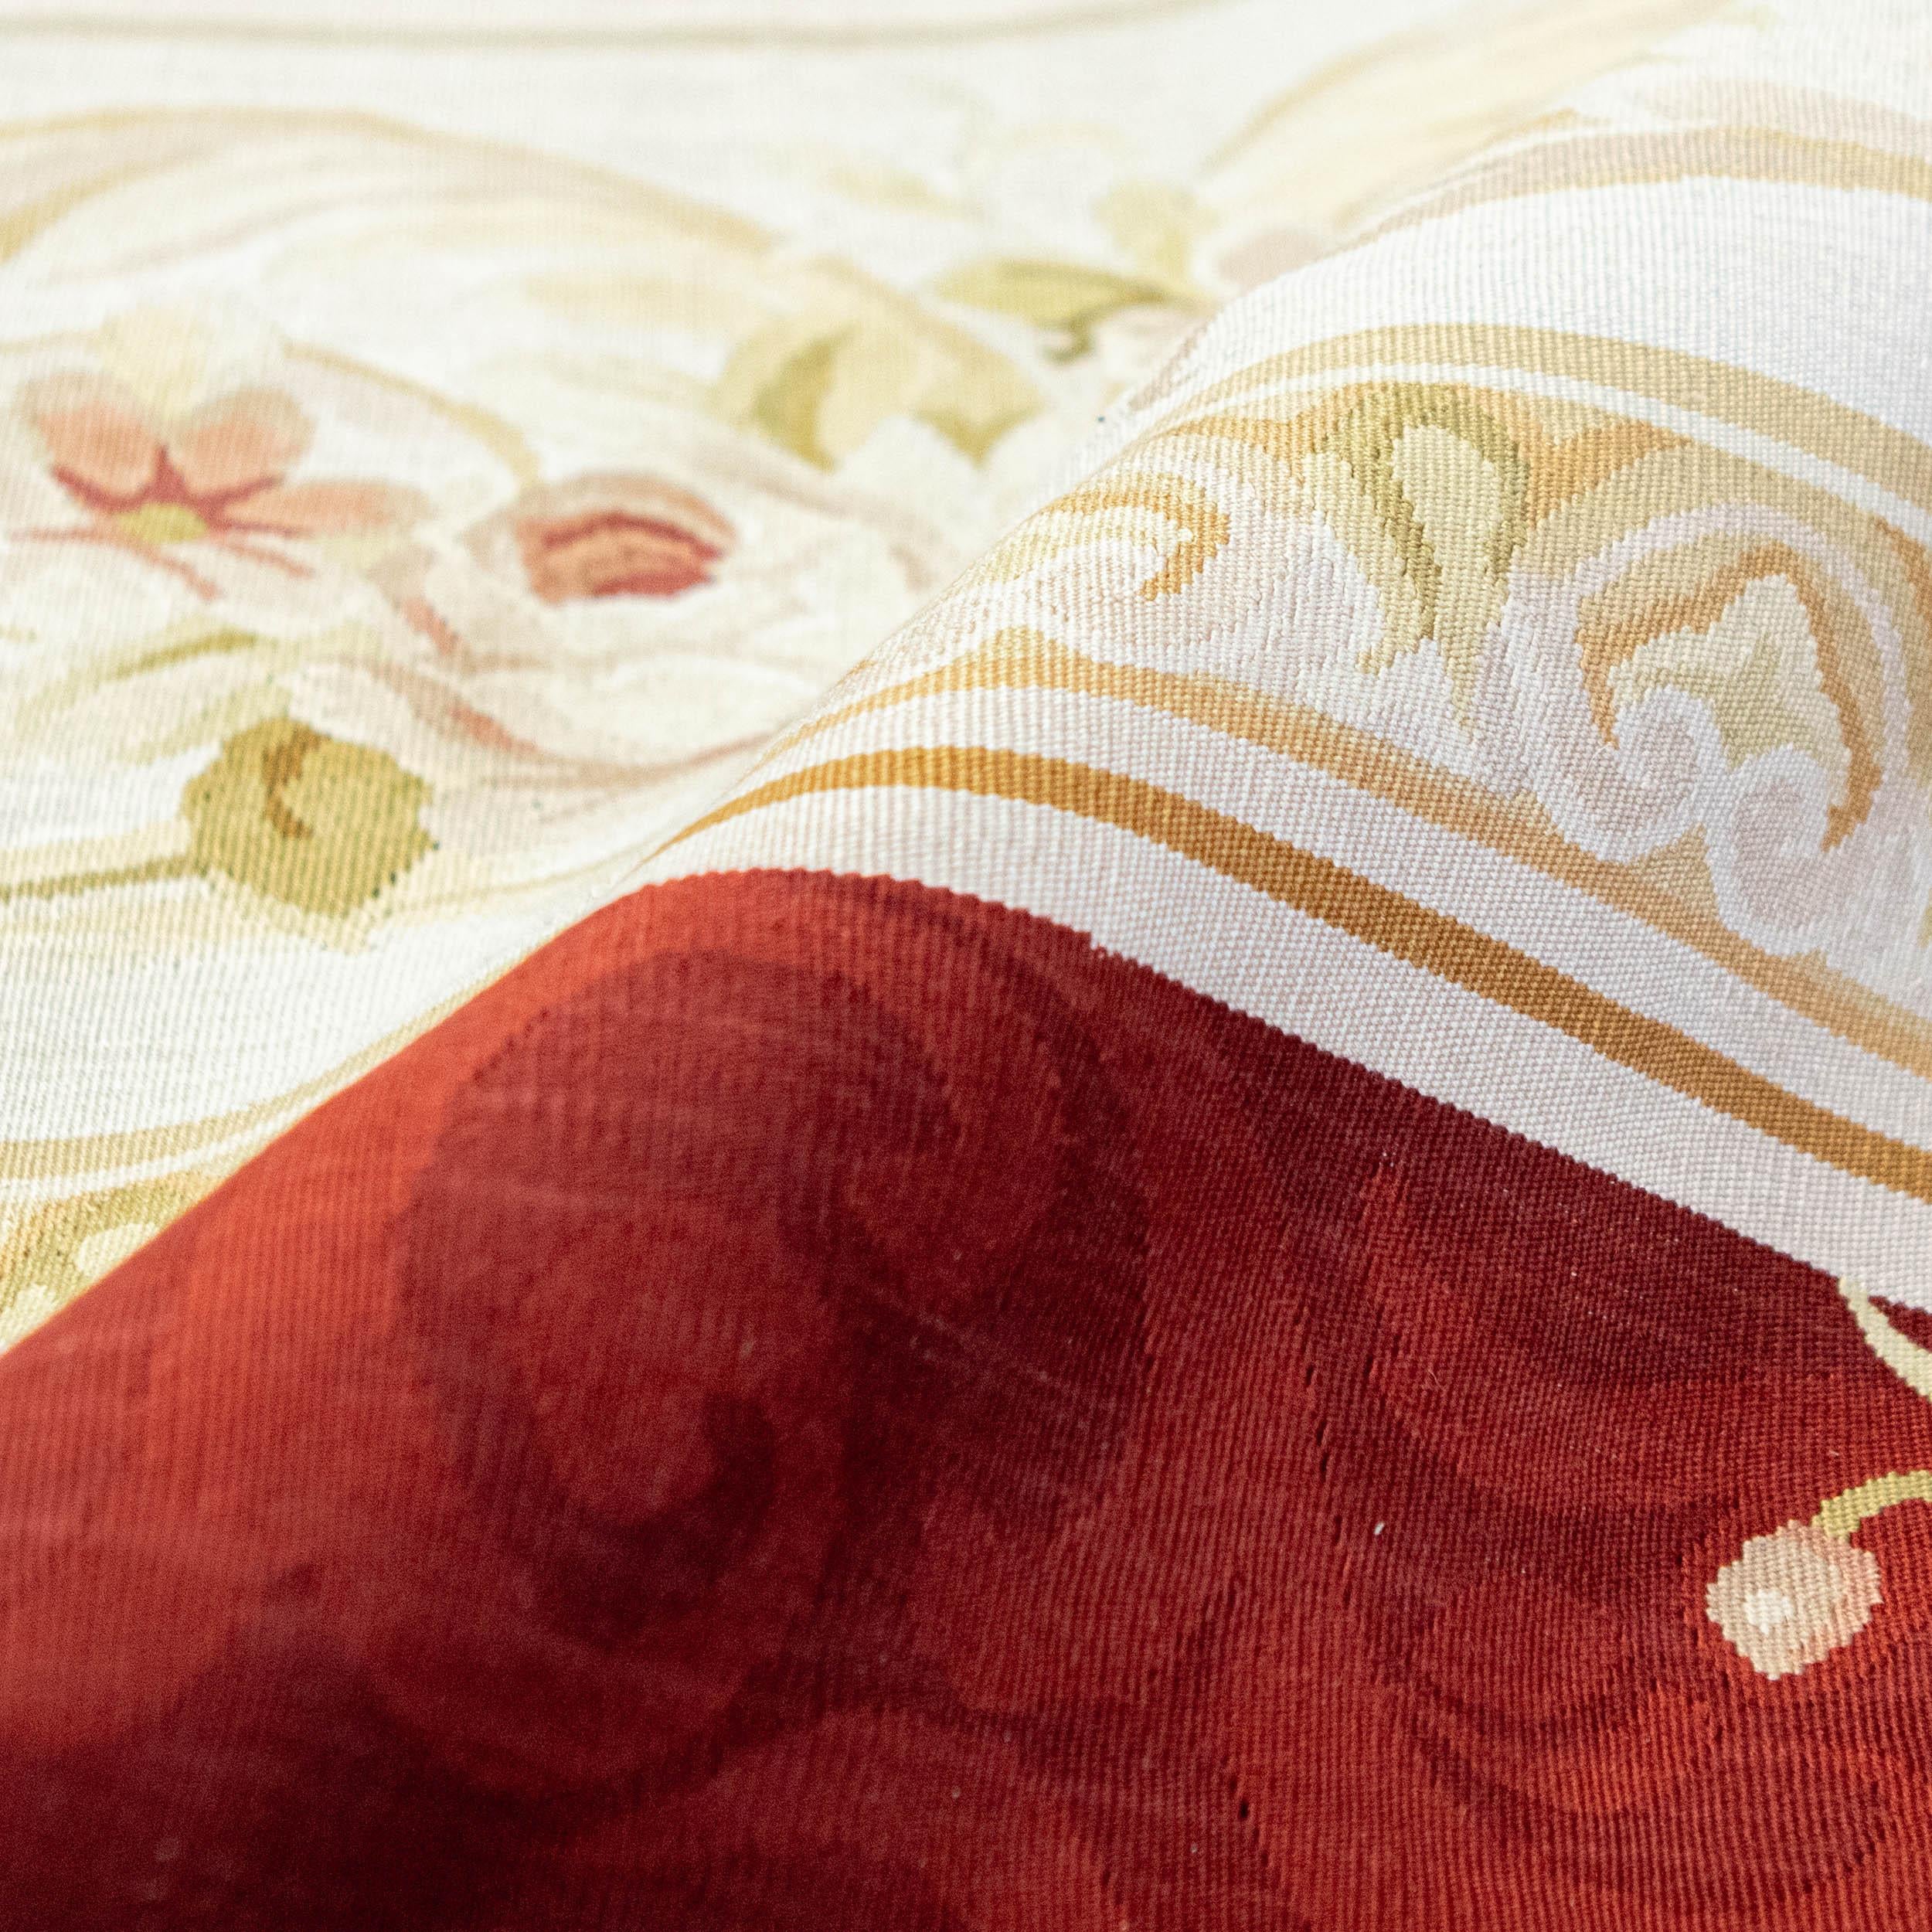 Le design du tapis d'Aubusson présente des motifs complexes, qui rappellent souvent l'élégance européenne classique. Des fleurs délicates, des bordures ornées et des motifs gracieux s'unissent dans une symphonie artistique, mettant en valeur la